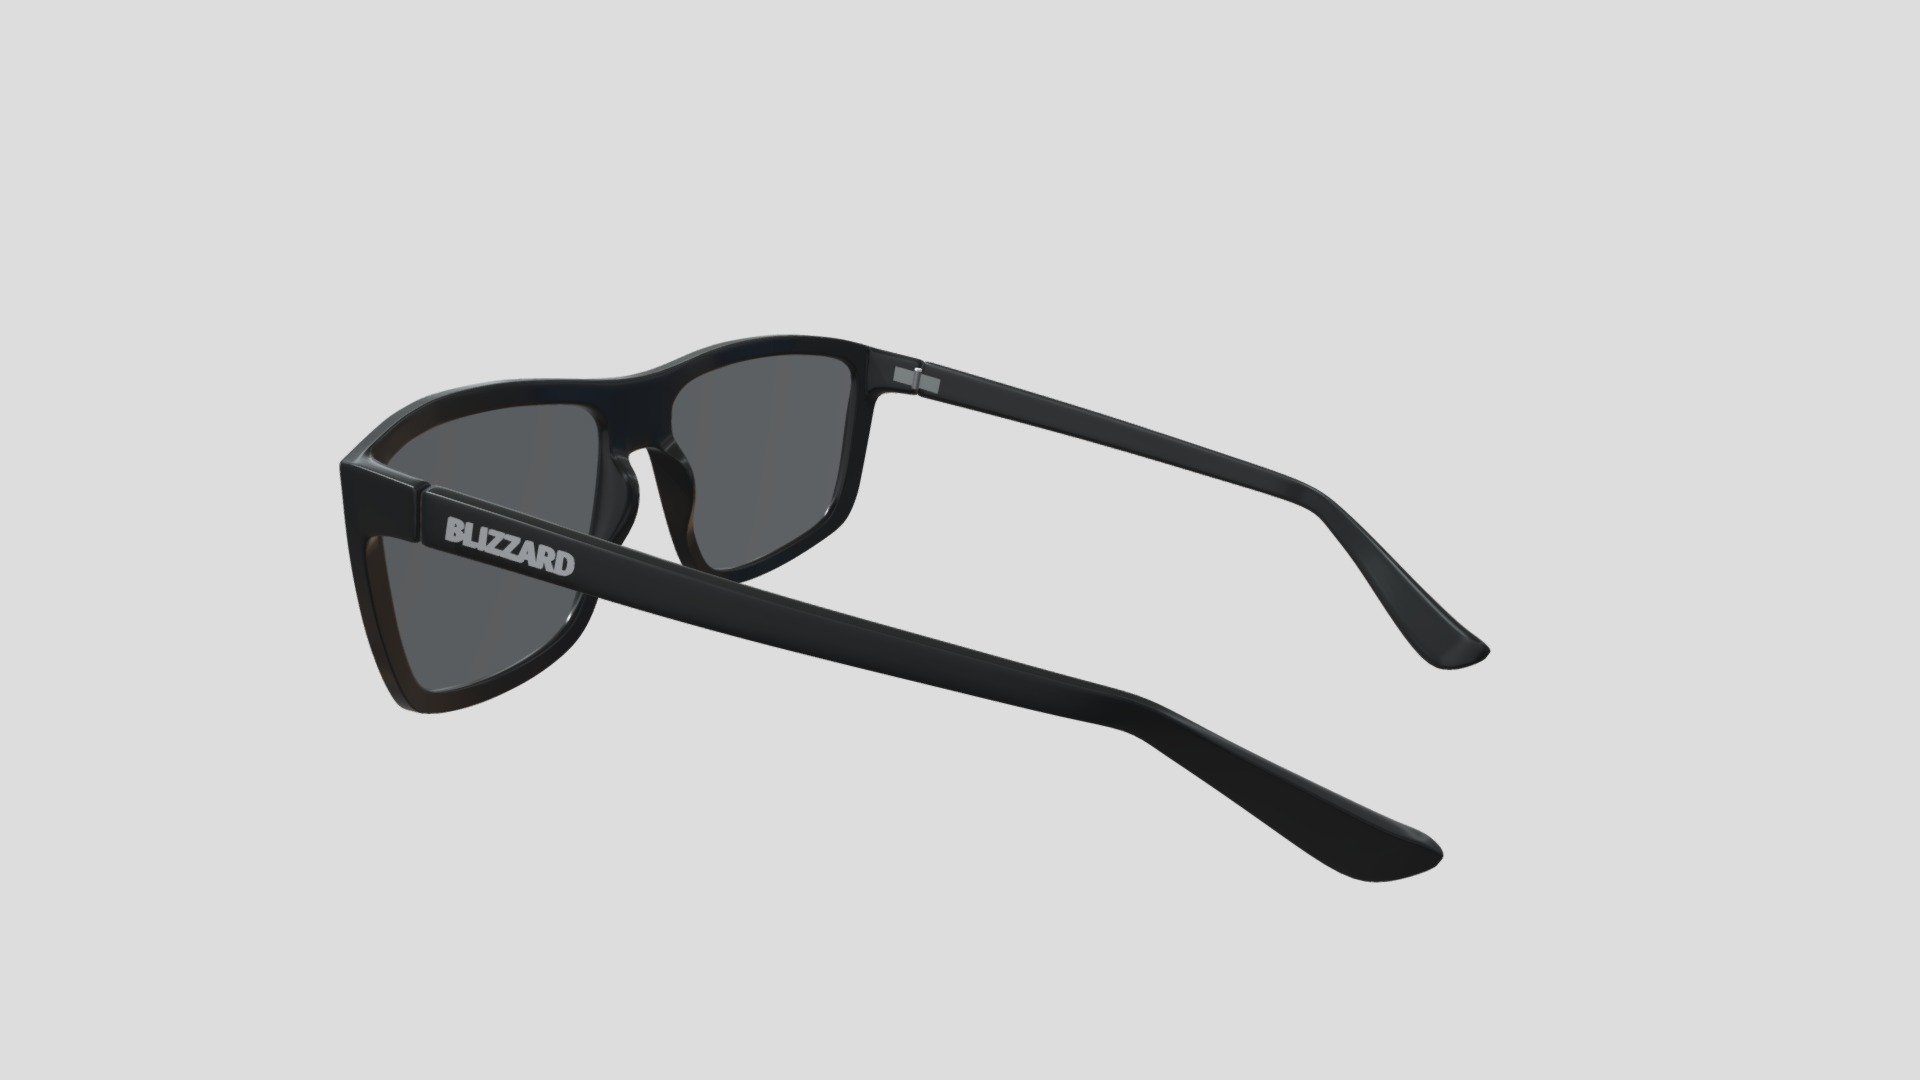 Sunglasses model based on real Blizzard glasses 3d model